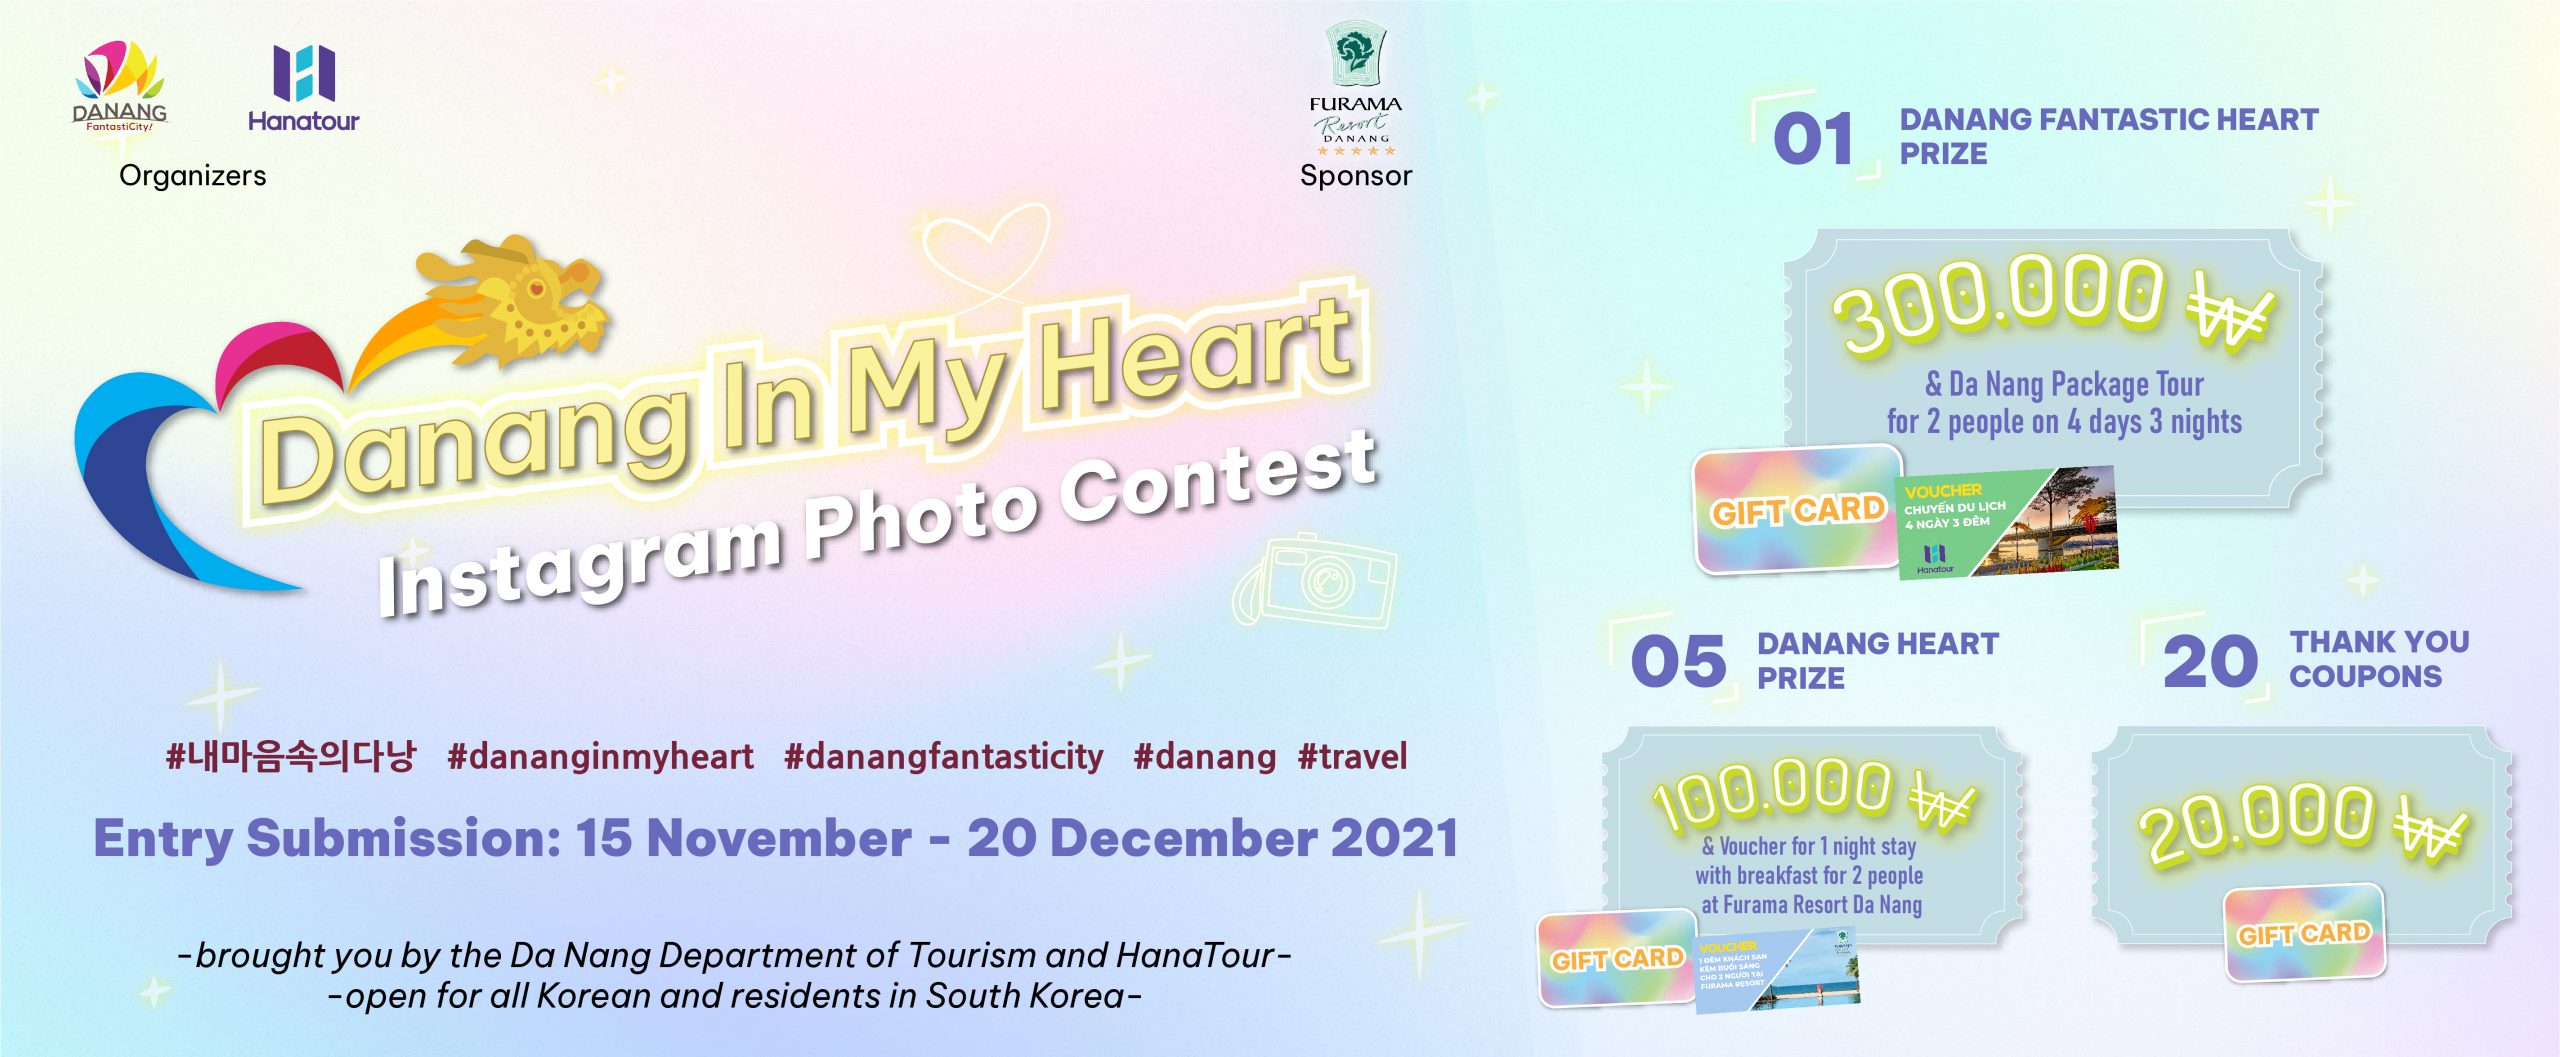 Danang in my heart photo contest website banner